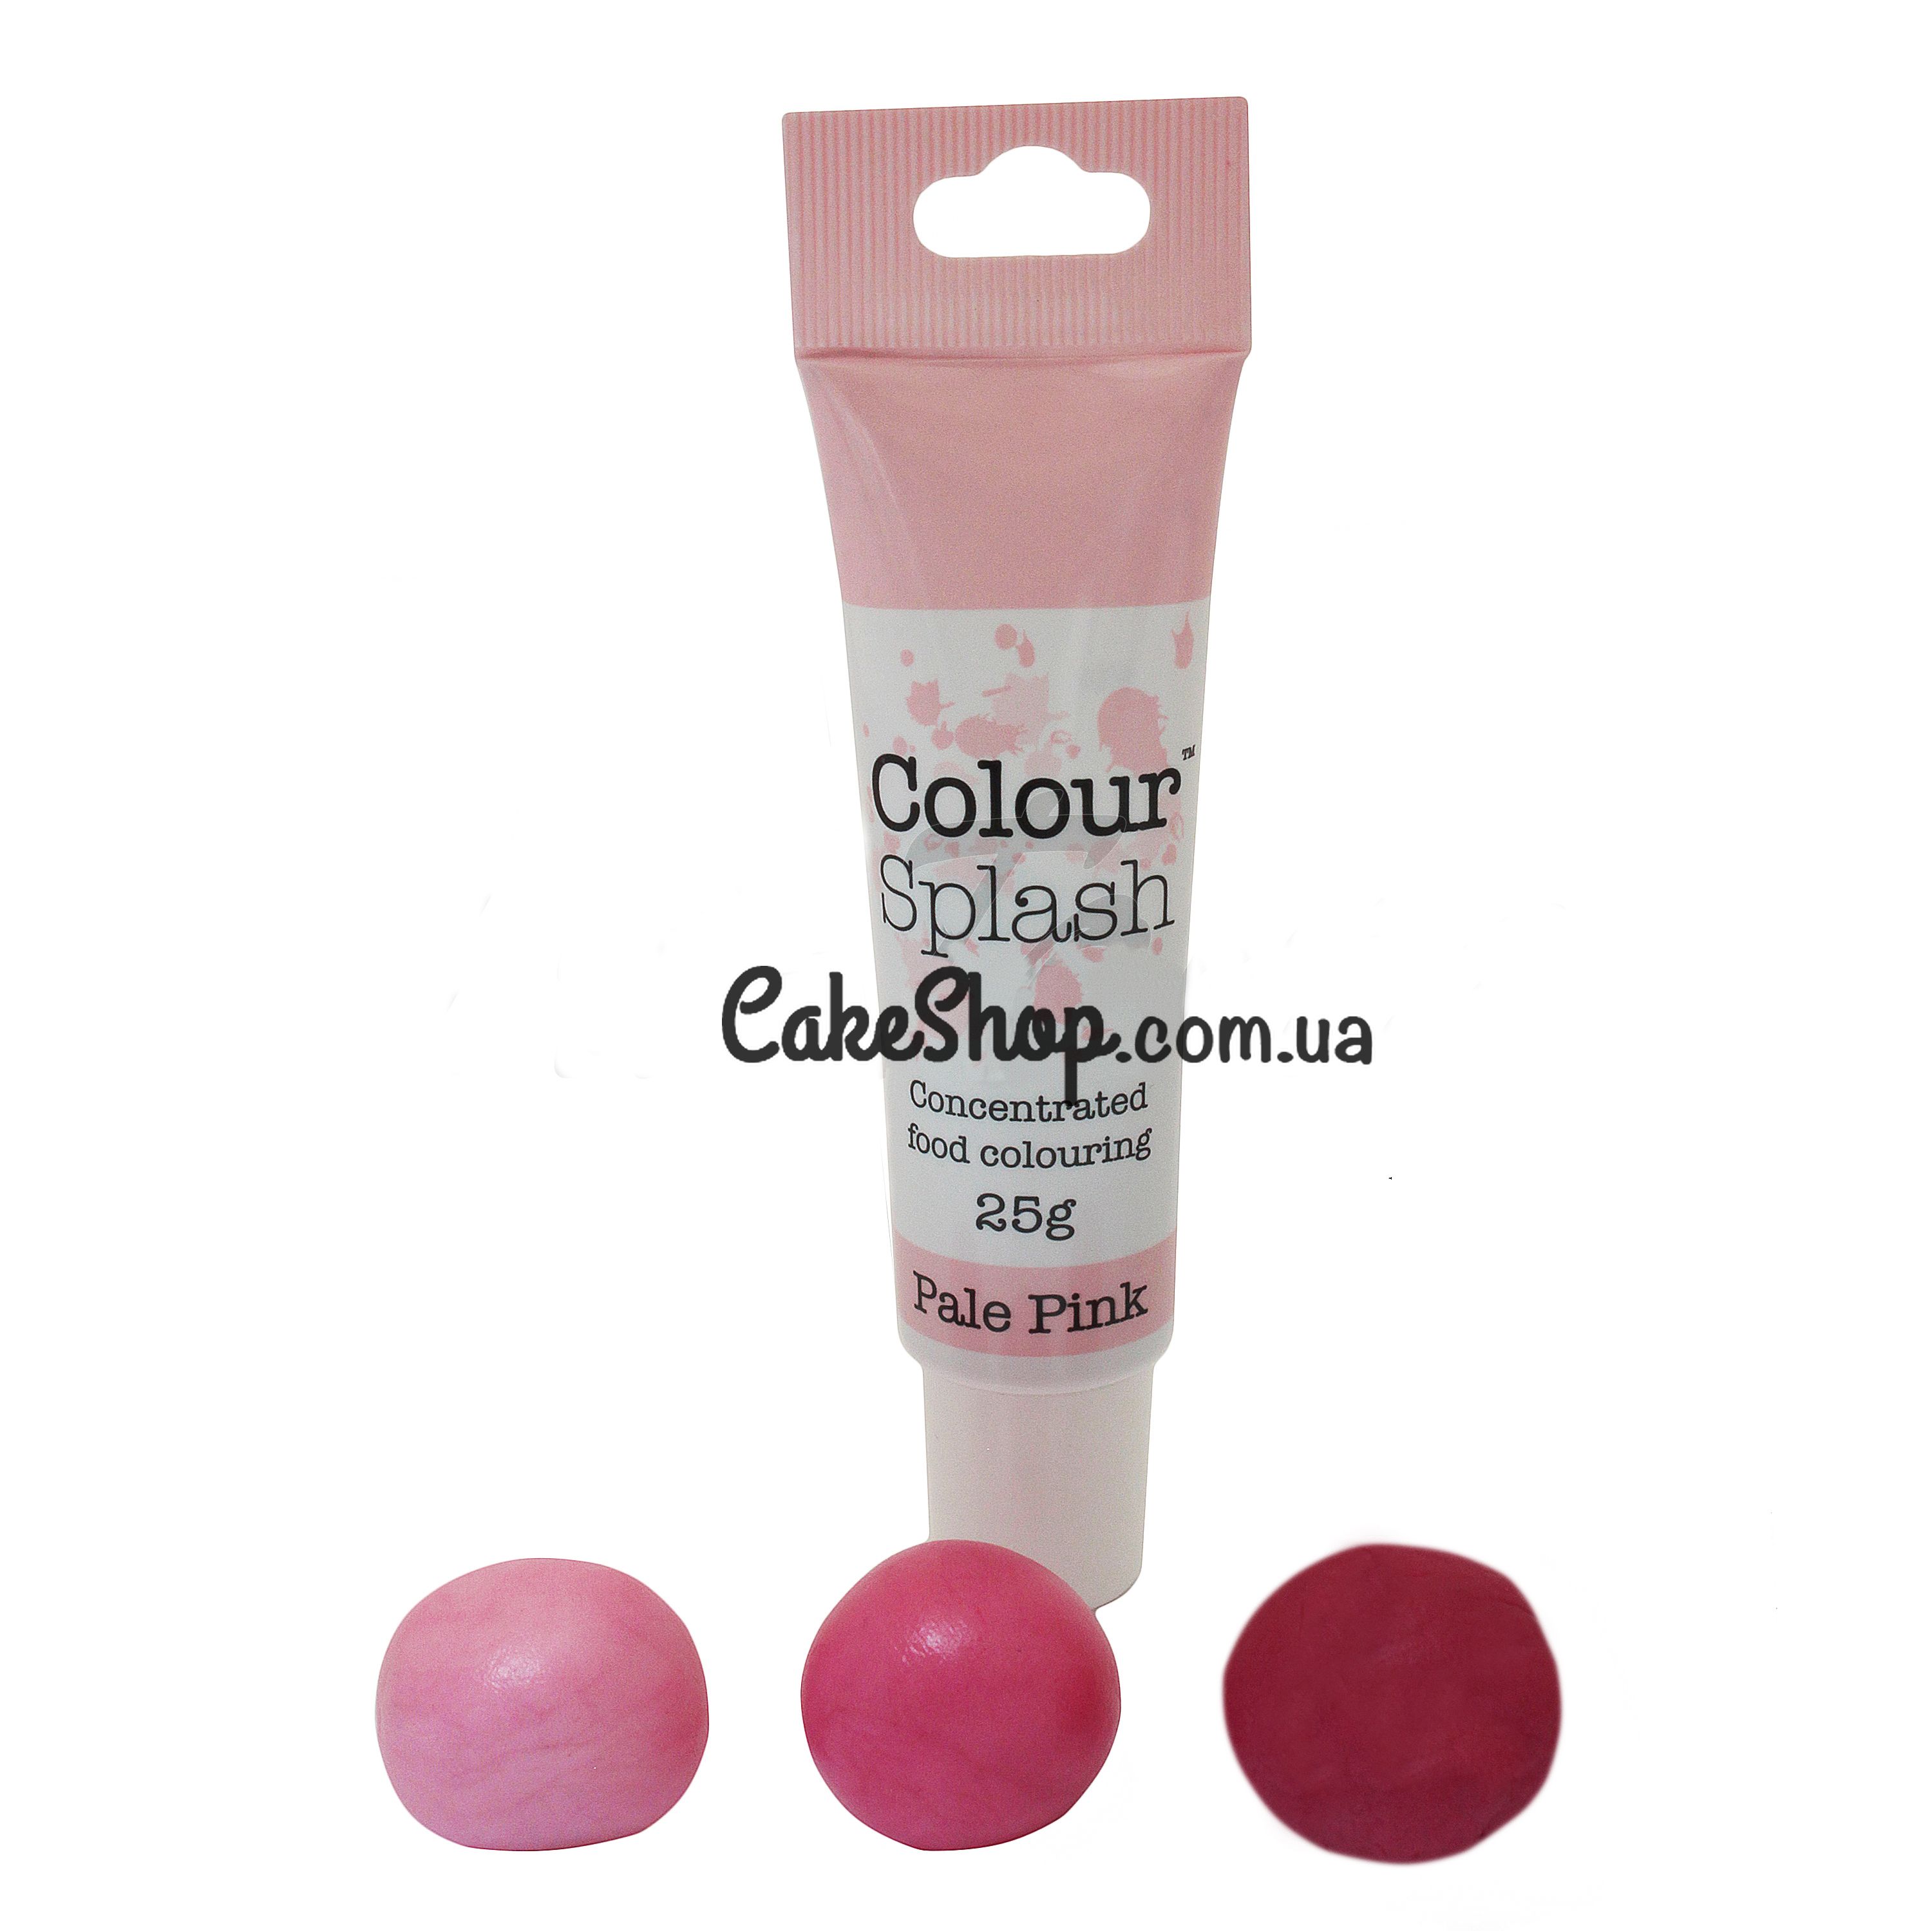 ⋗ Гелевый краситель Colour Splash, 25 г Pale Pink купить в Украине ➛ CakeShop.com.ua, фото